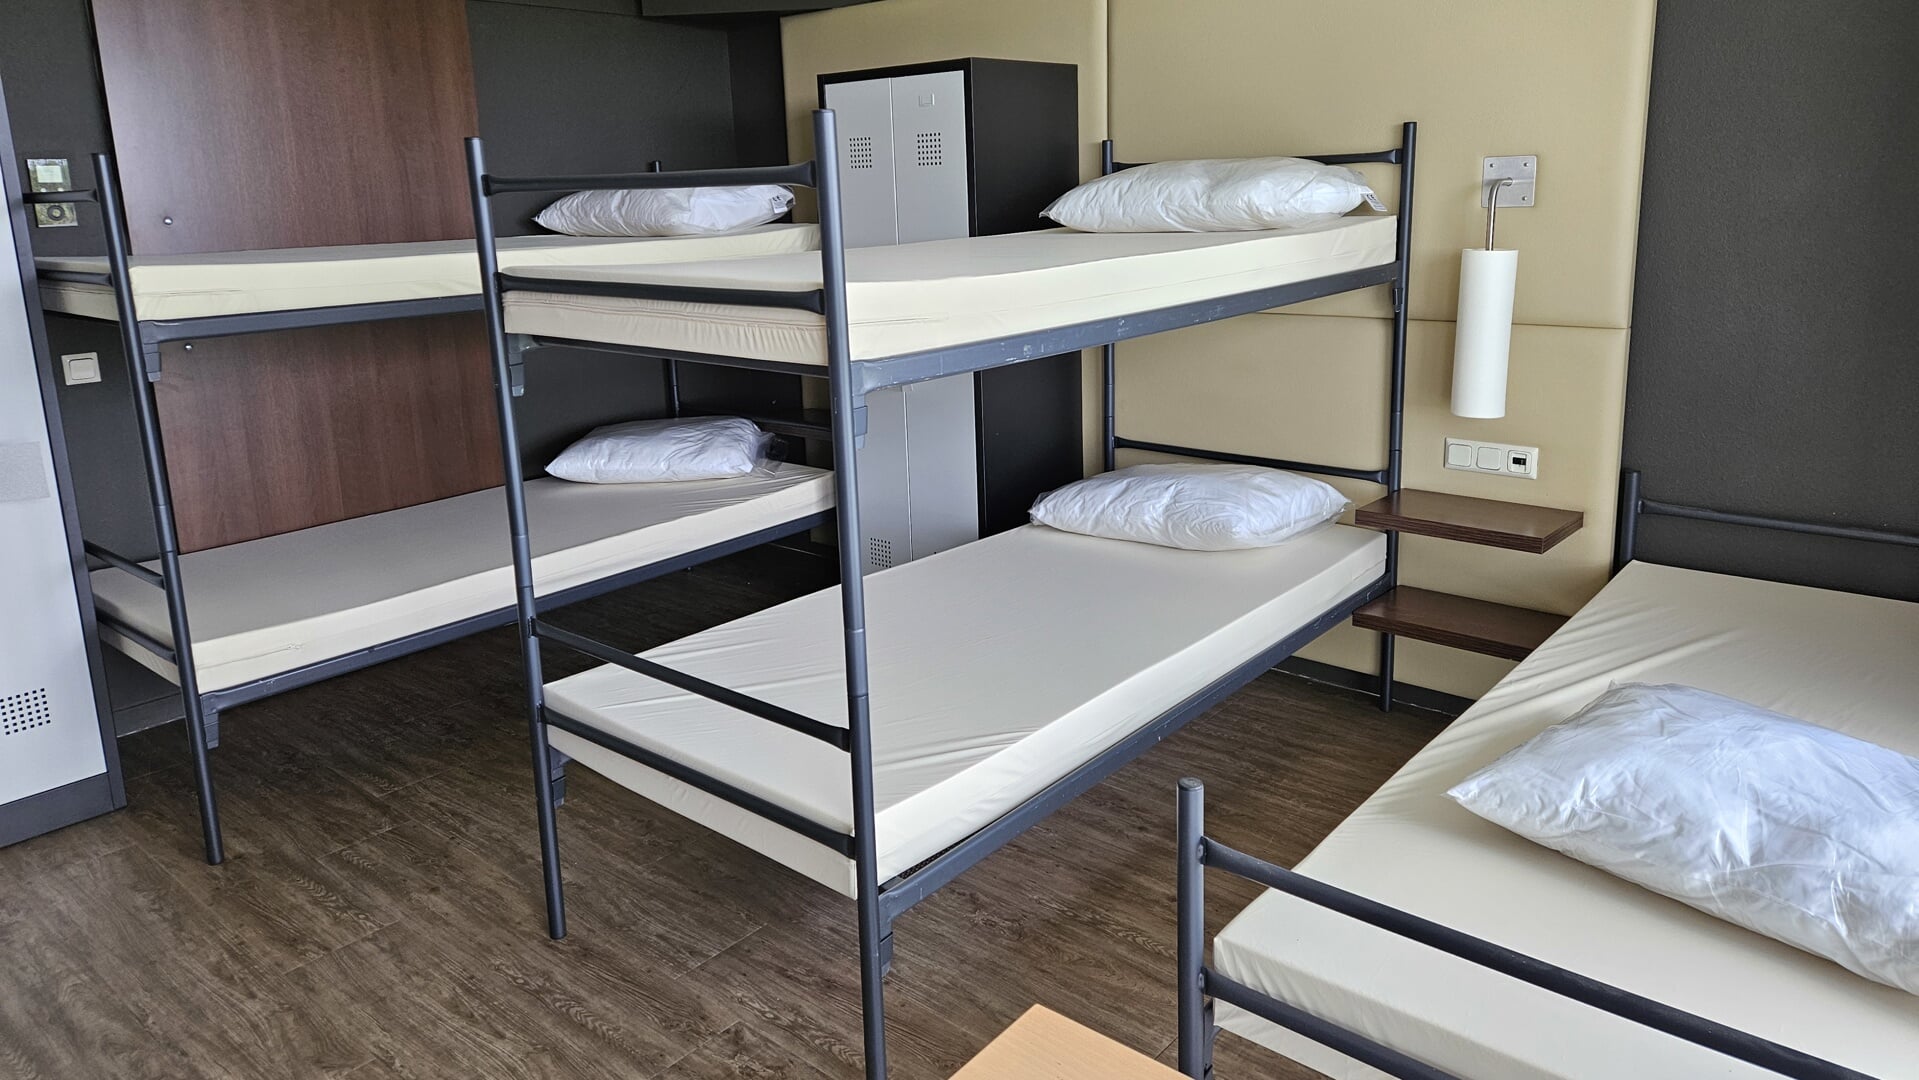 Tweepersoonskamers in hotel ARA zijn met stapelbedden geschikt gemaakt voor vijf asielzoekers. 